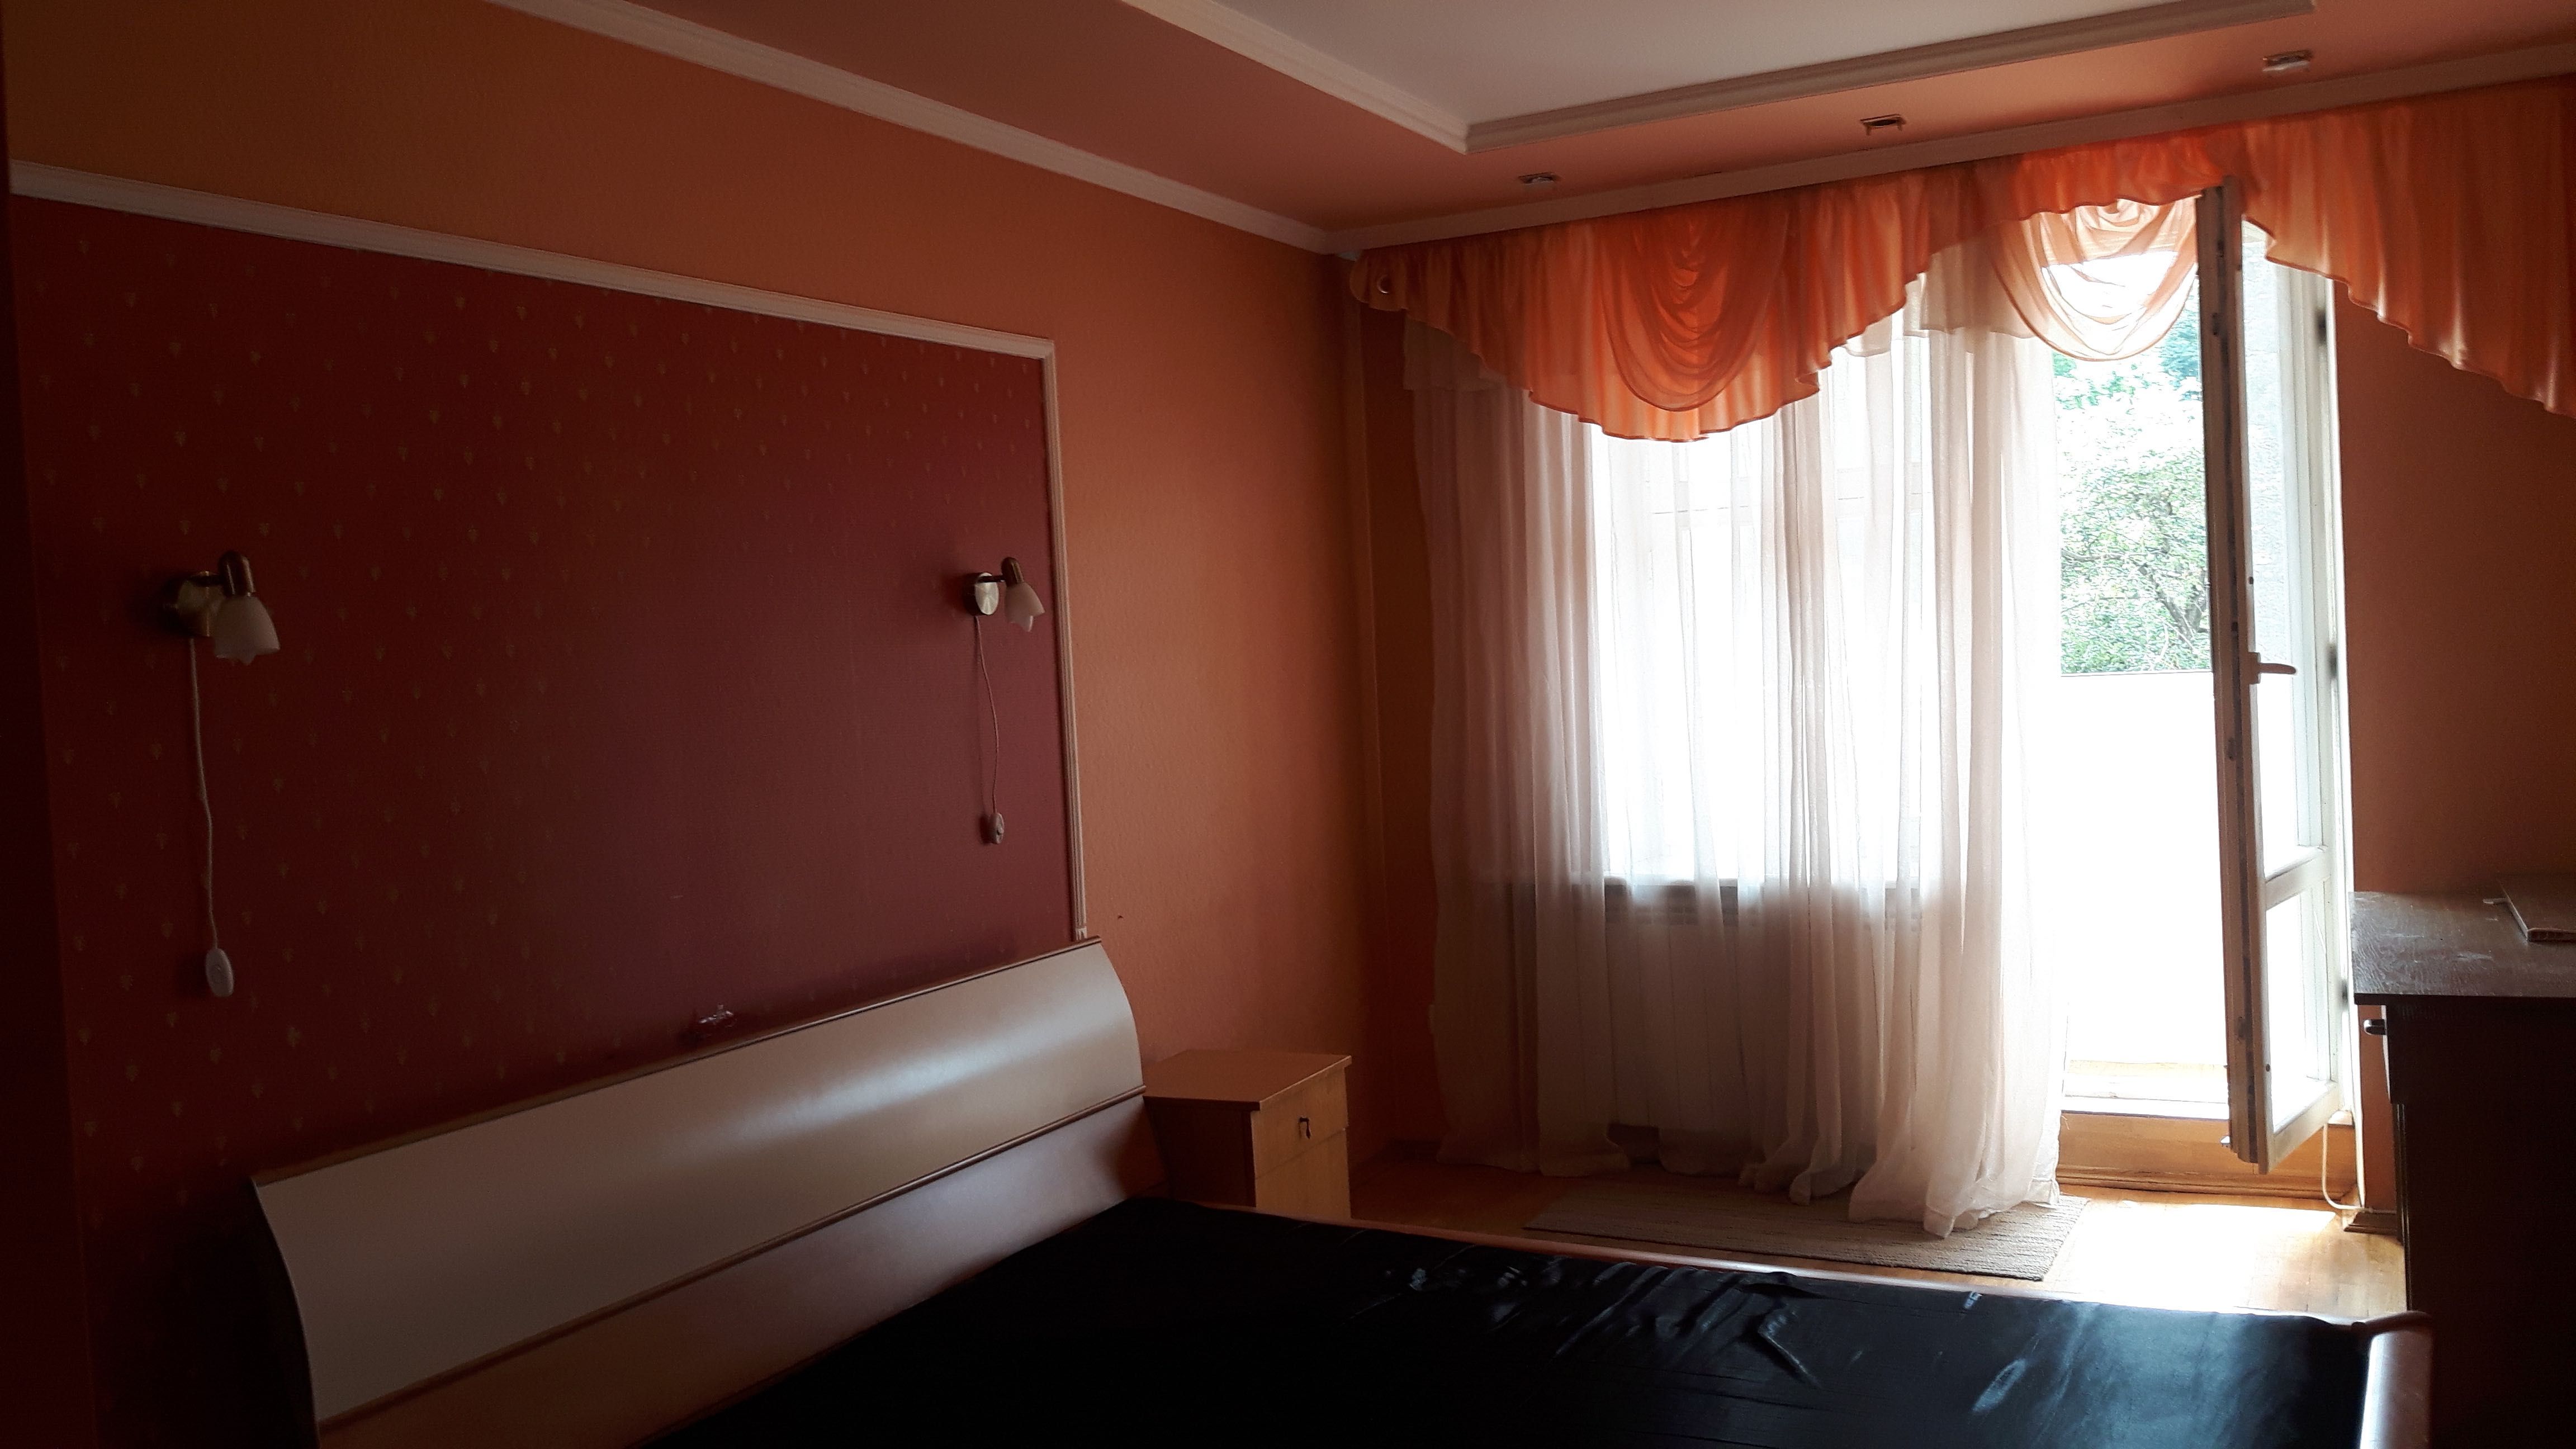 Оренда квартірі в центрі Тернополя без посередників